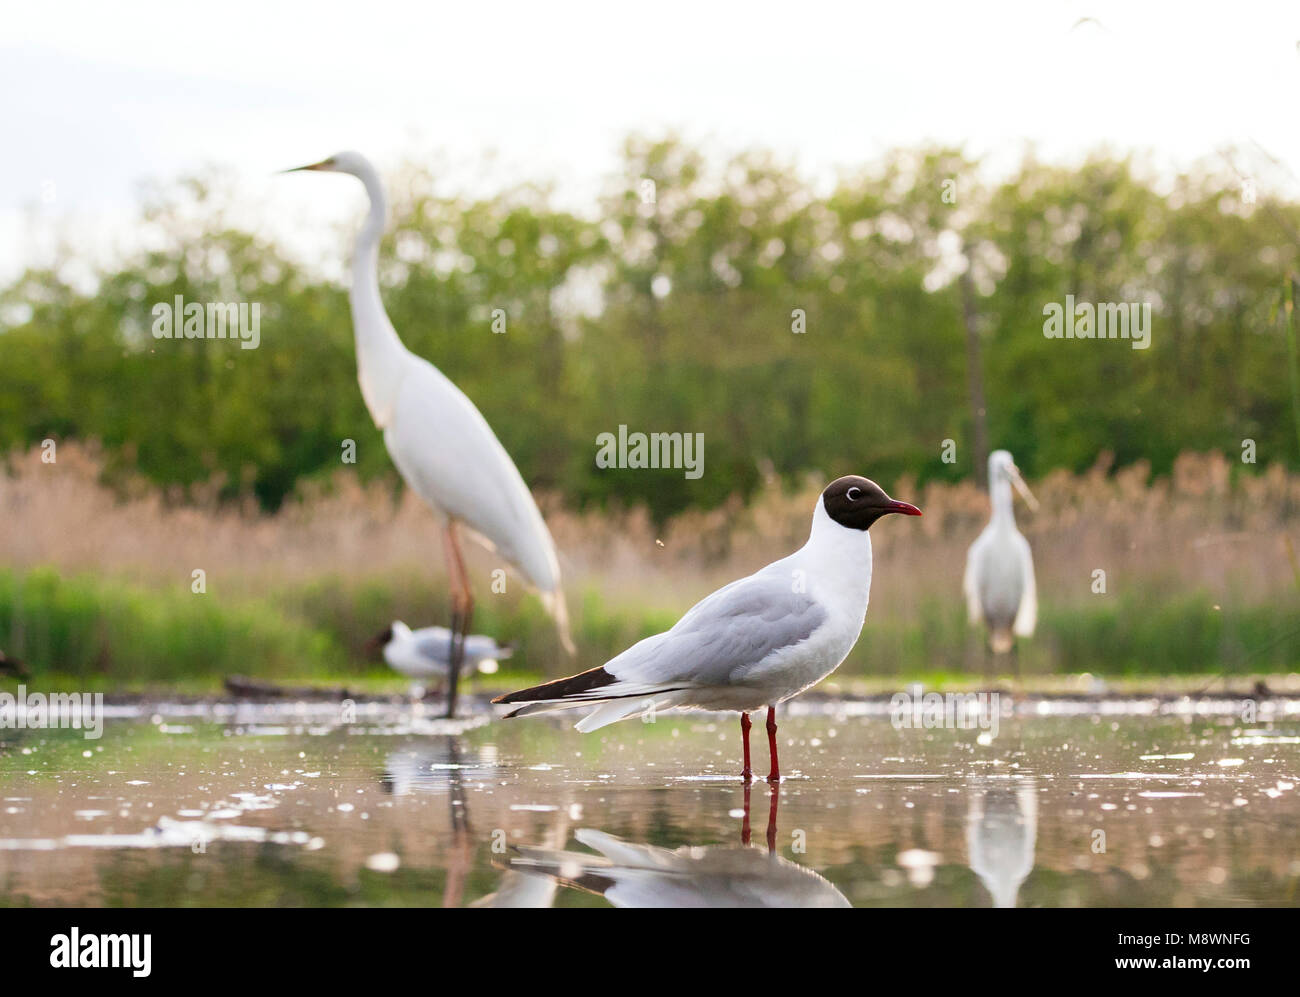 Kokmeeuw staand dans de l'eau rencontrés vogels op achtergrond ; commun Mouette debout dans l'eau avec les oiseaux en arrière-plan Banque D'Images